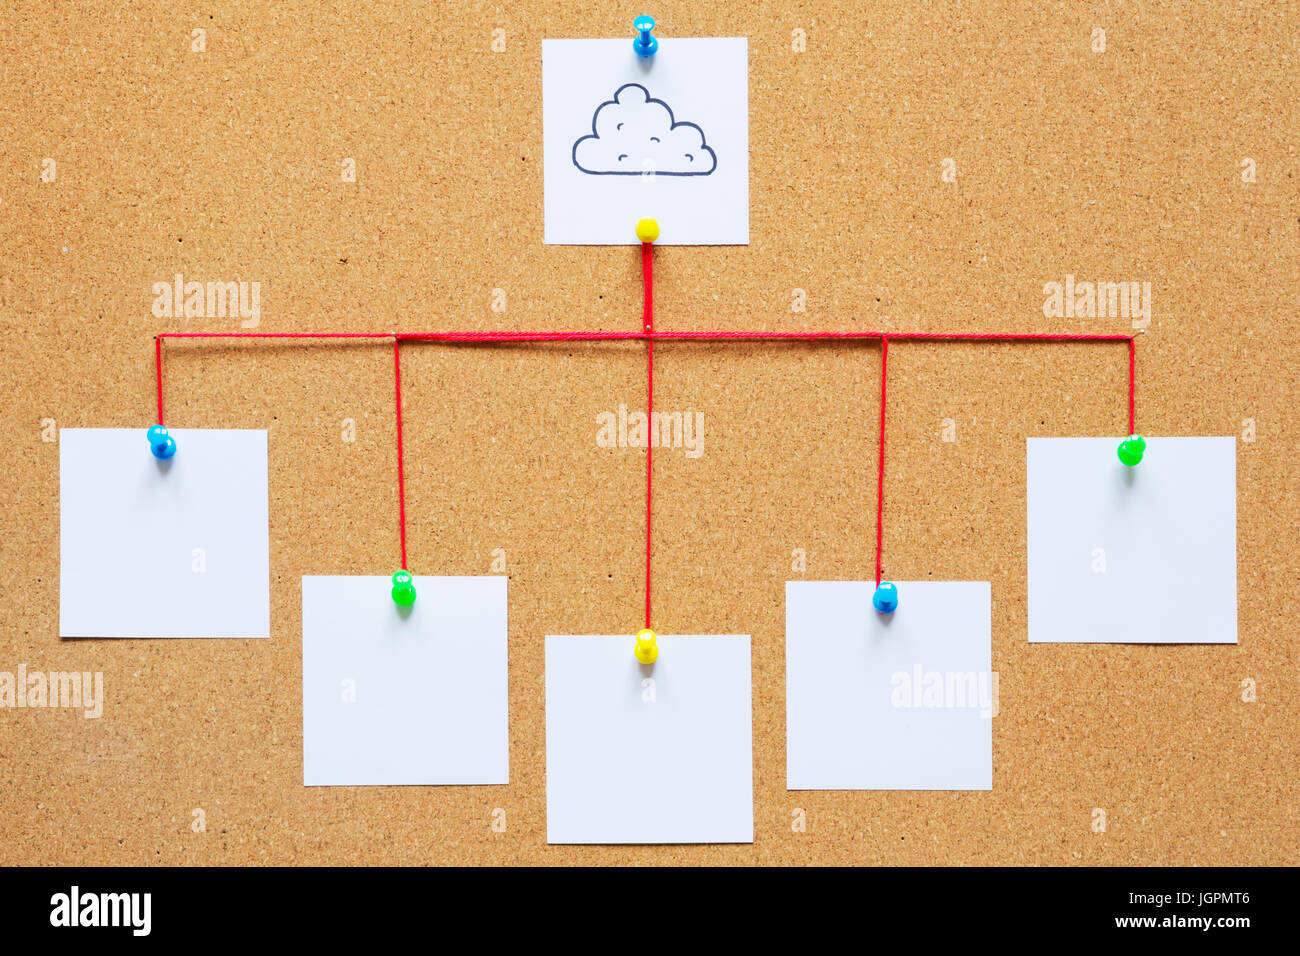 Visualisierung von Cloud computing auf einer Kork-Pinnwand. Stockfoto